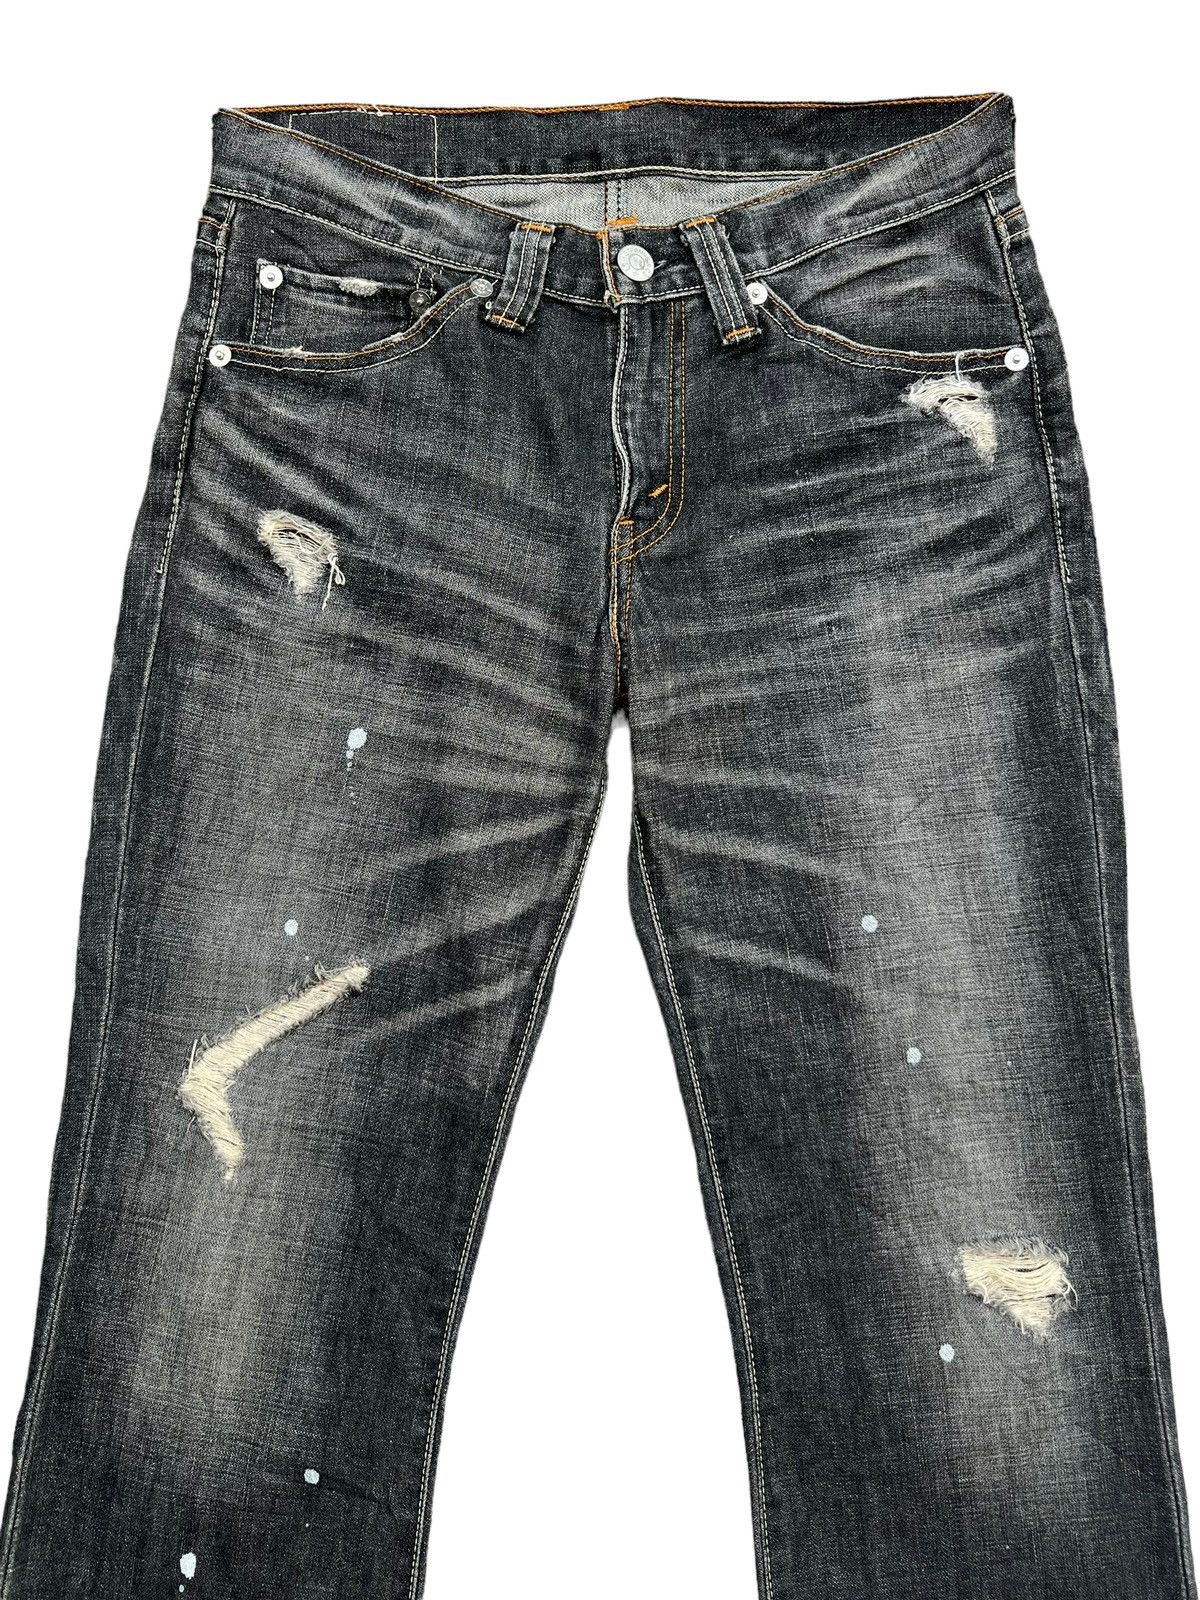 Levis 708 Distressed Paint Lowrise Flare Denim Jeans 33x34 - 4